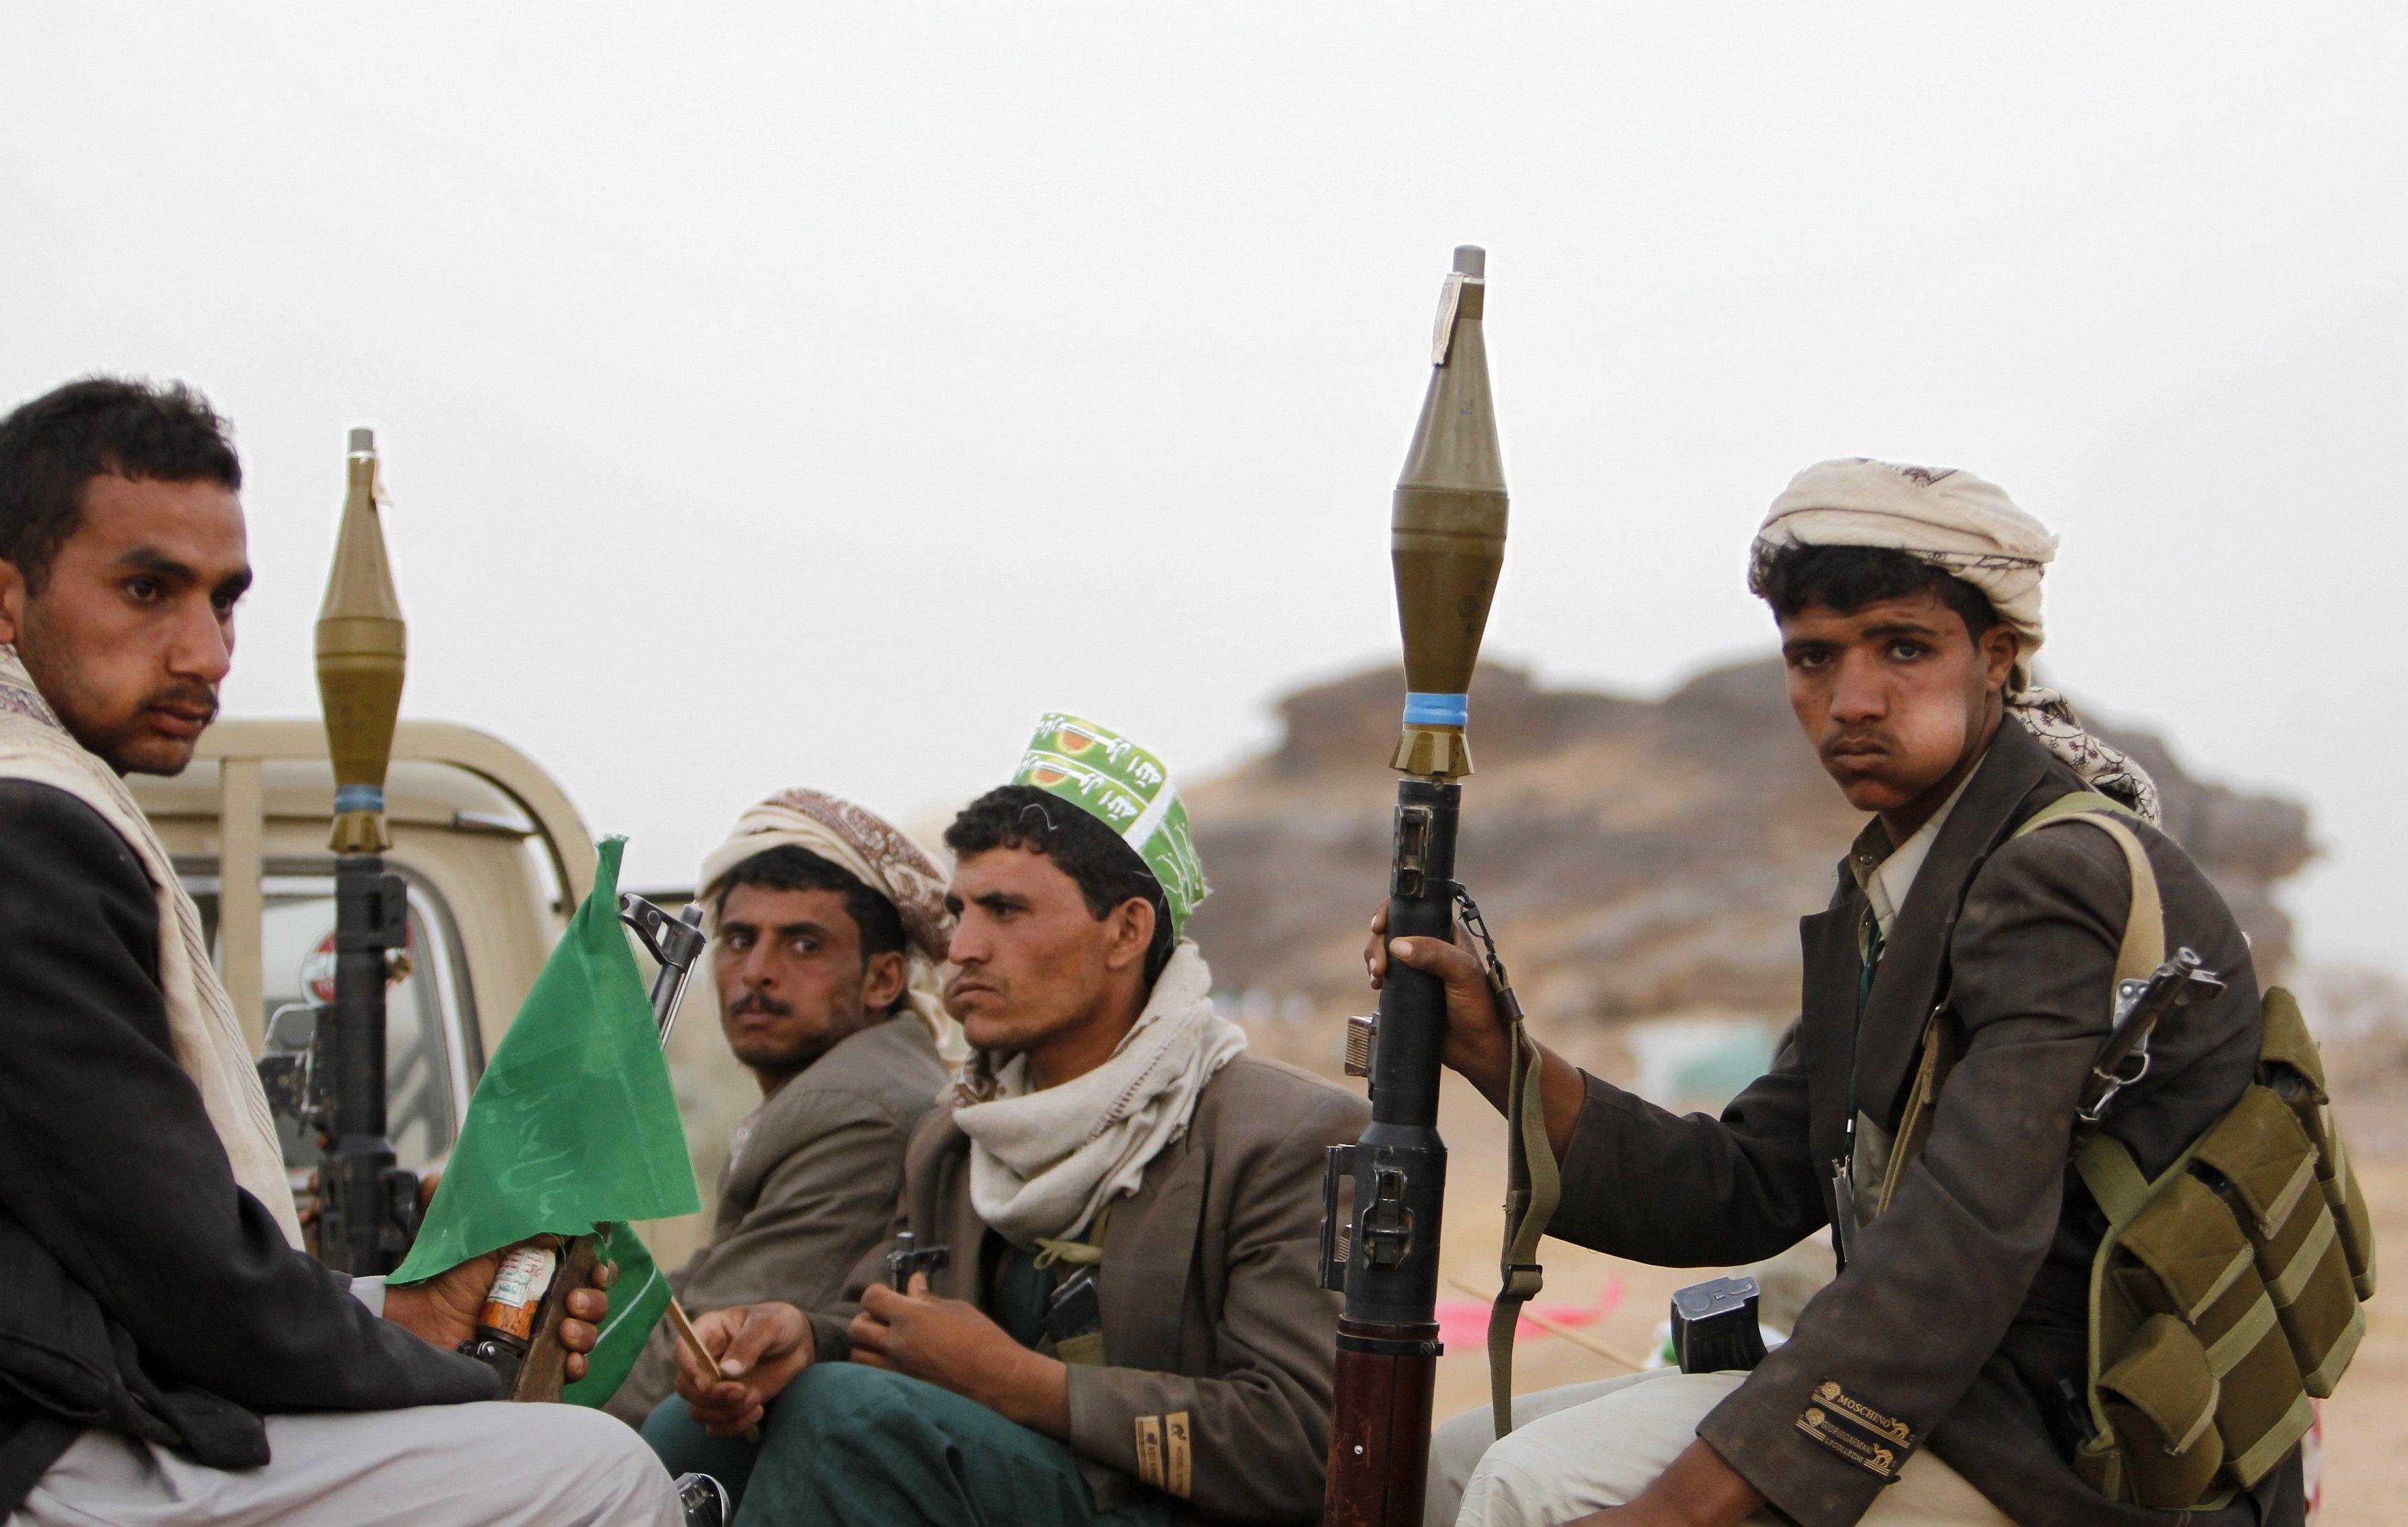 الحوثيون يكثّفون هجماتهم صوب الجيش اليمني والسعودية.. وأمريكا تحذر